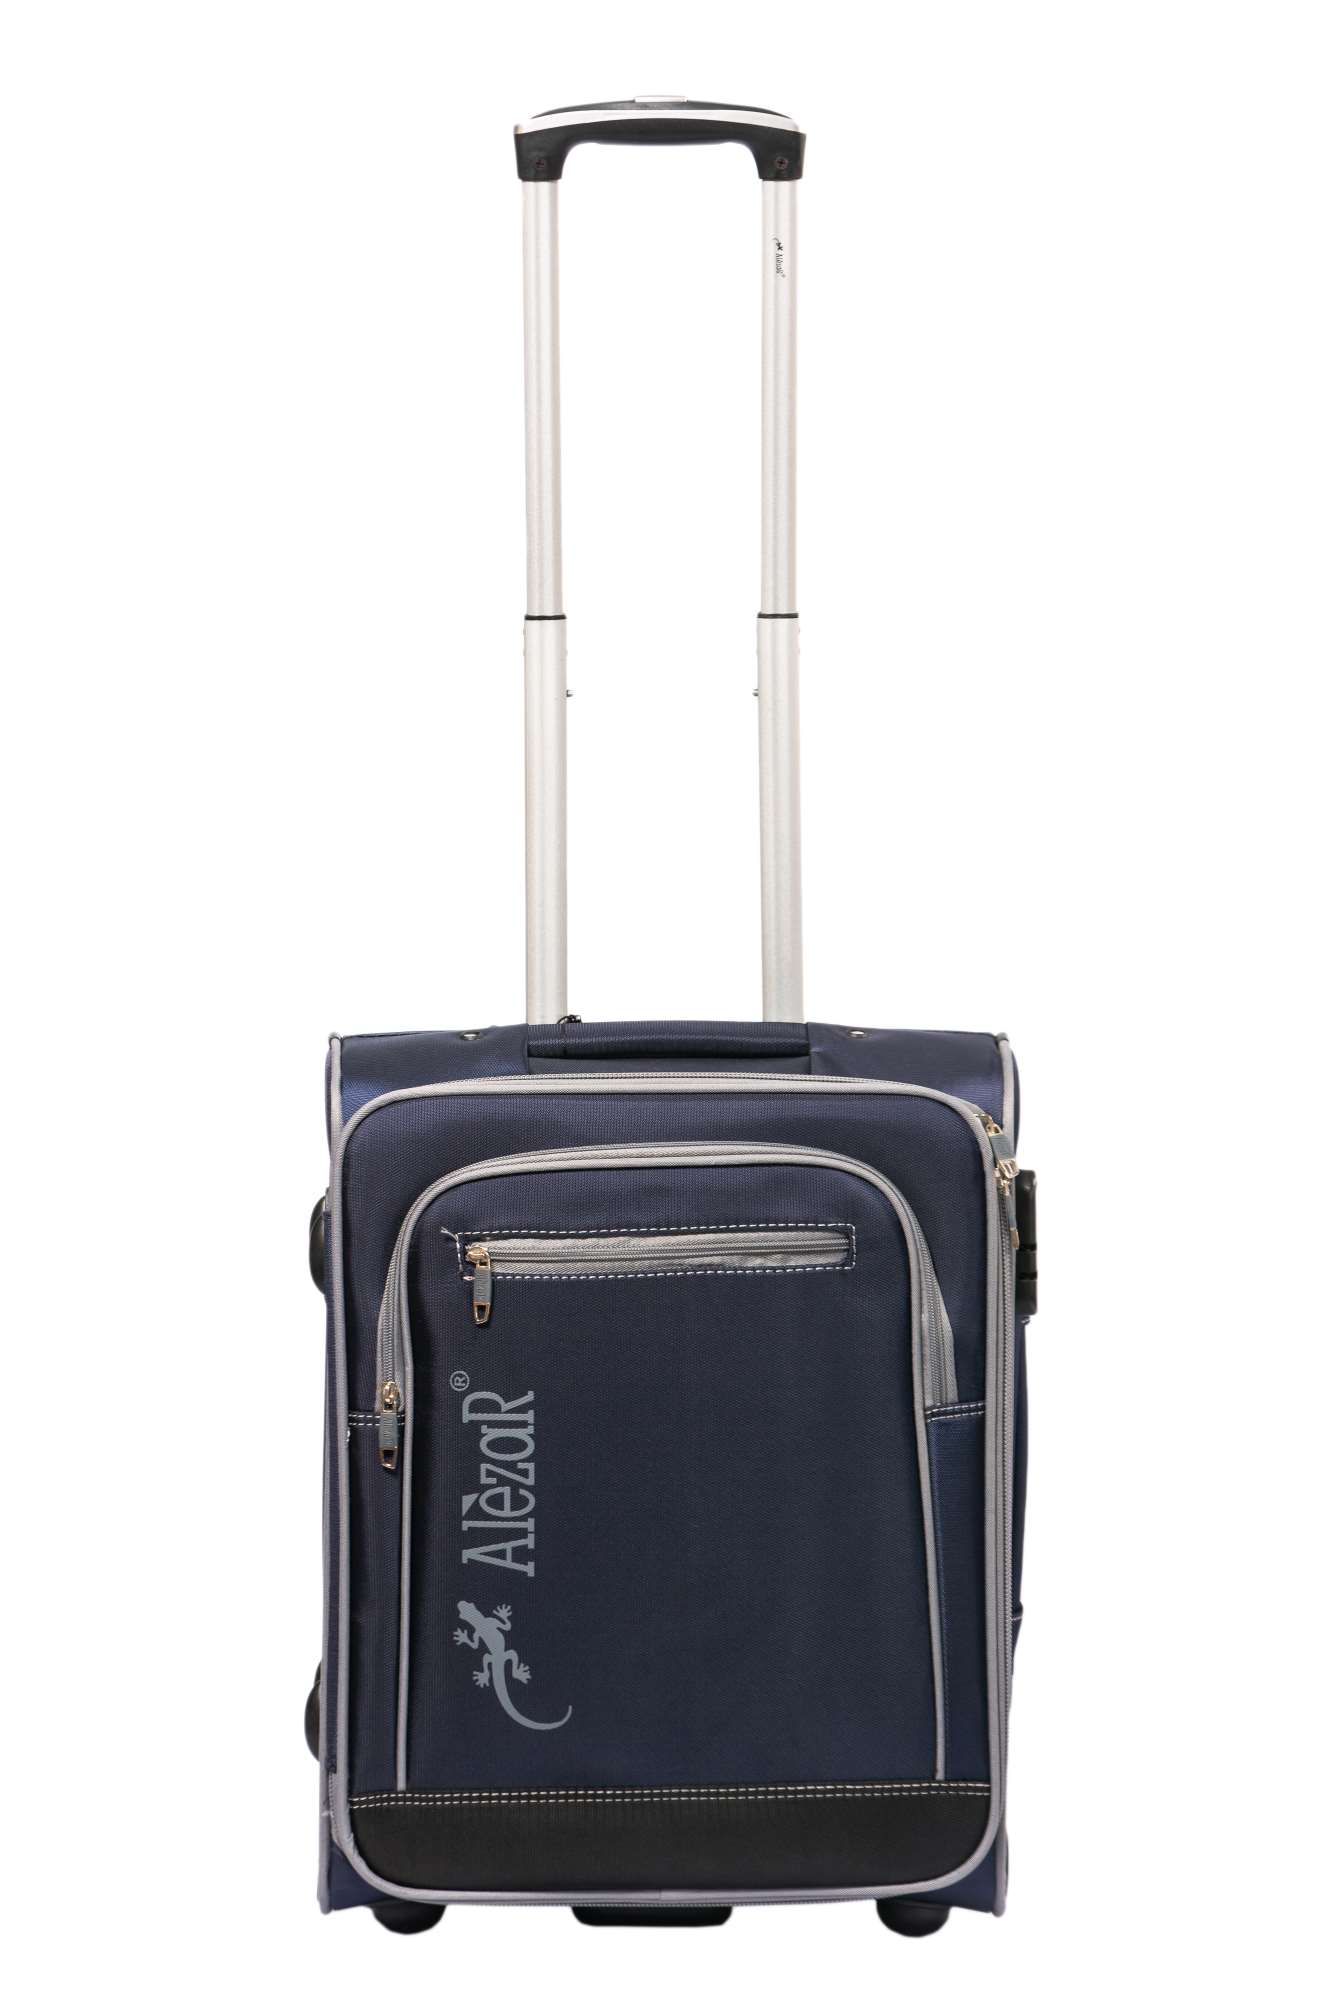 Alezar Cabin Size Travel Bag Blue/Gray 20